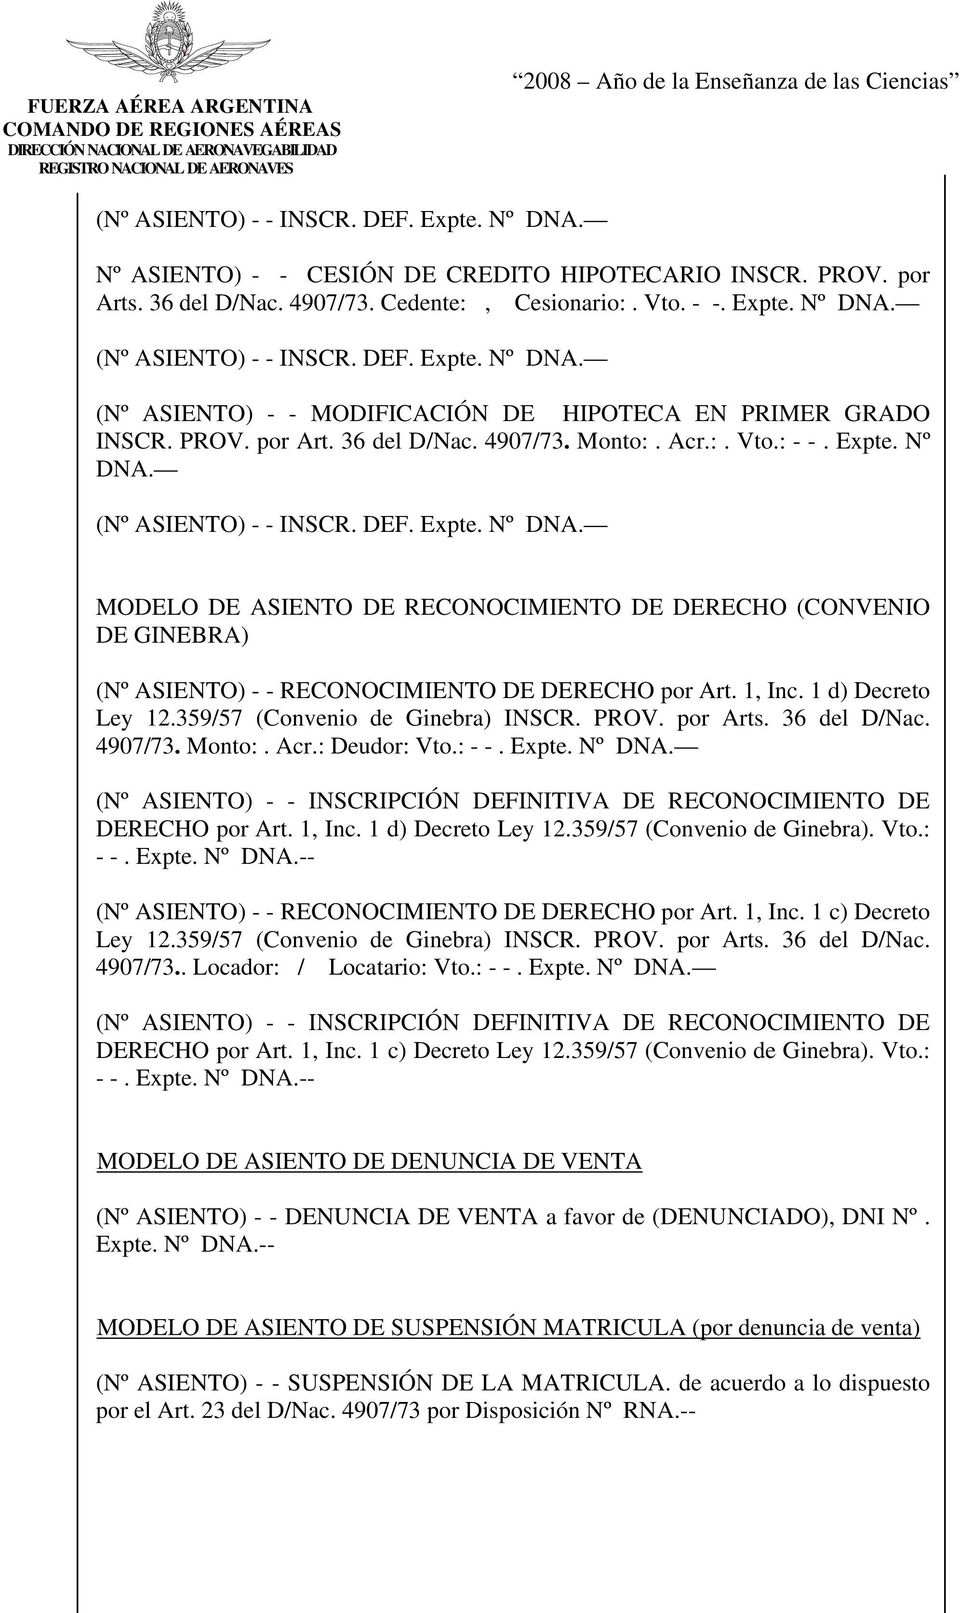 MODELO DE ASIENTO DE RECONOCIMIENTO DE DERECHO (CONVENIO DE GINEBRA) (Nº ASIENTO) - - RECONOCIMIENTO DE DERECHO por Art. 1, Inc. 1 d) Decreto Ley 12.359/57 (Convenio de Ginebra) INSCR. PROV. por Arts.